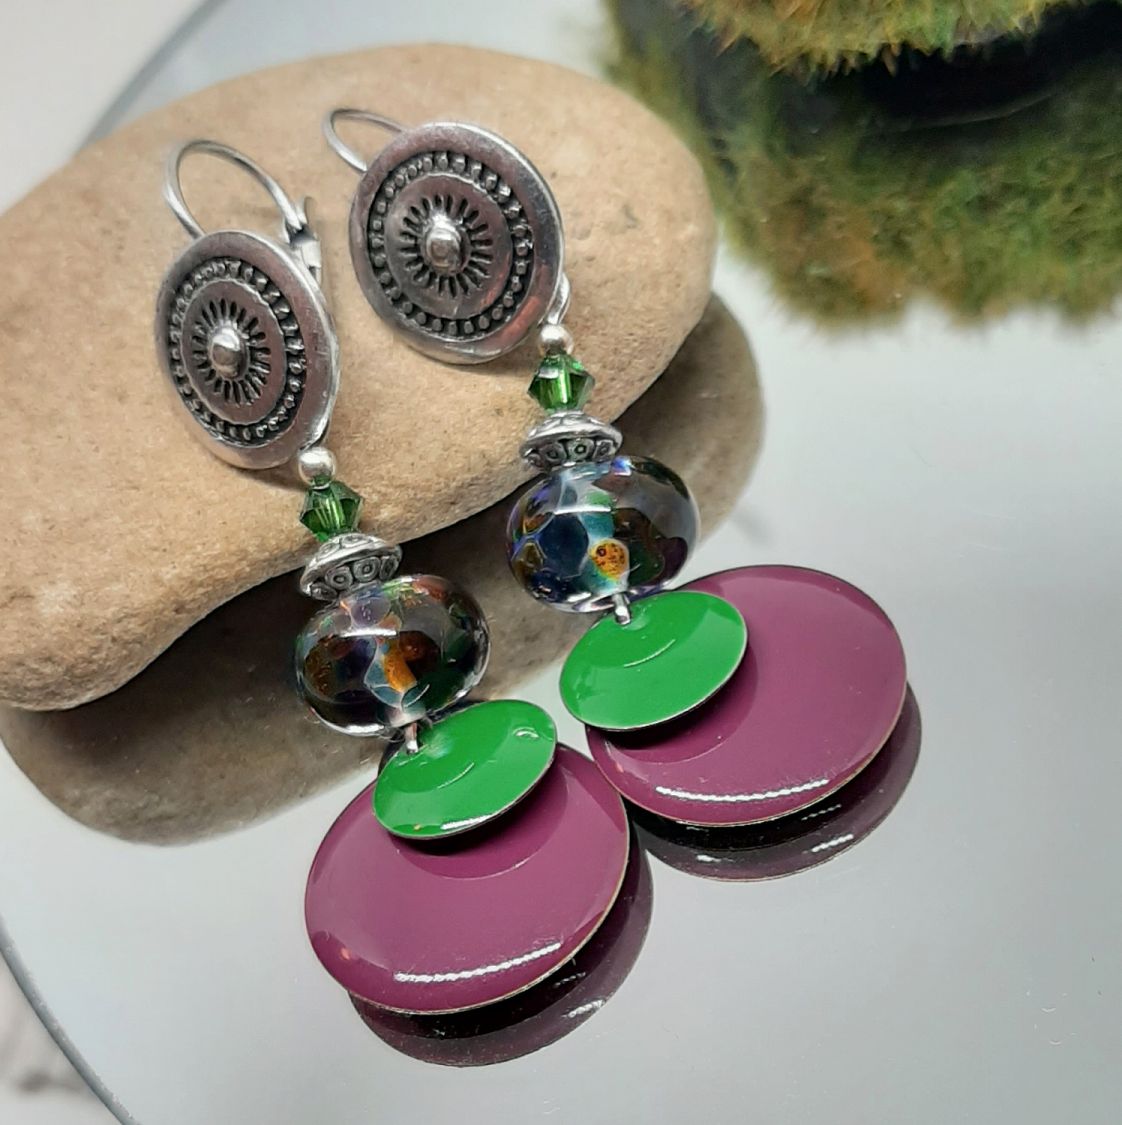 boucles d'oreilles pour oreilles percéesvertes et violet couleurs originales et maruage parfait sur des perles en verre